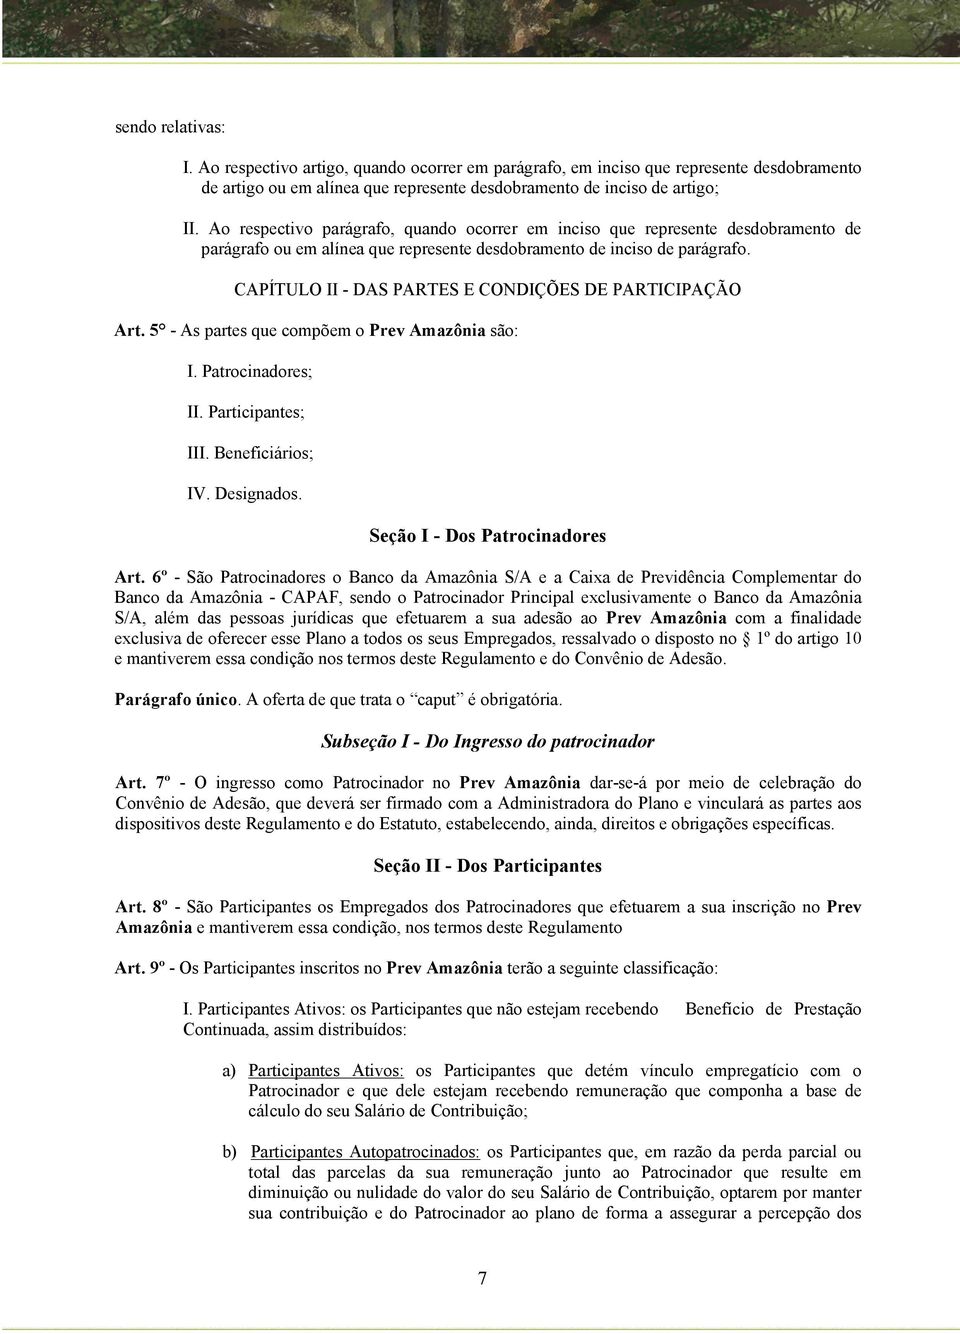 CAPÍTULO II - DAS PARTES E CONDIÇÕES DE PARTICIPAÇÃO Art. 5 - As partes que compõem o Prev Amazônia são: I. Patrocinadores; II. Participantes; III. Beneficiários; IV. Designados.